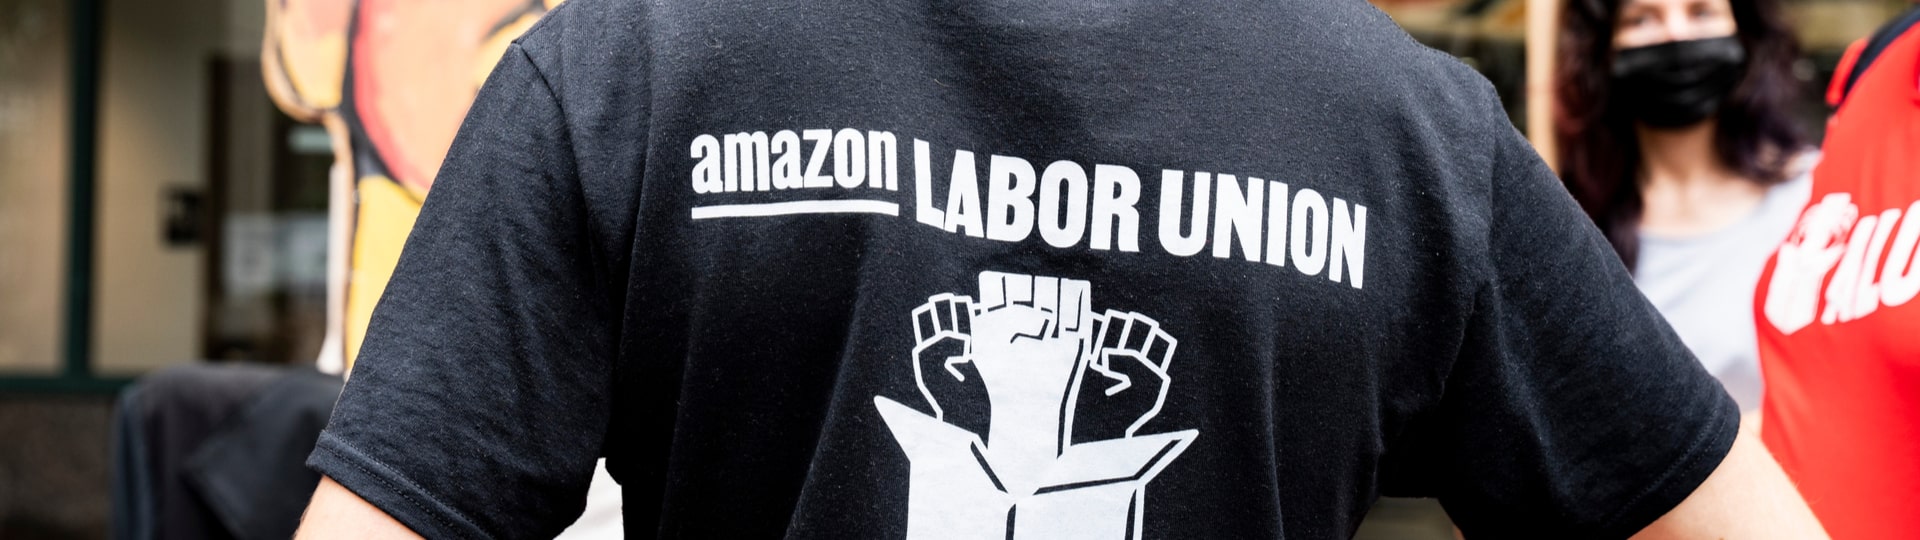 Amazon podniká kroky proti vzniku odborů